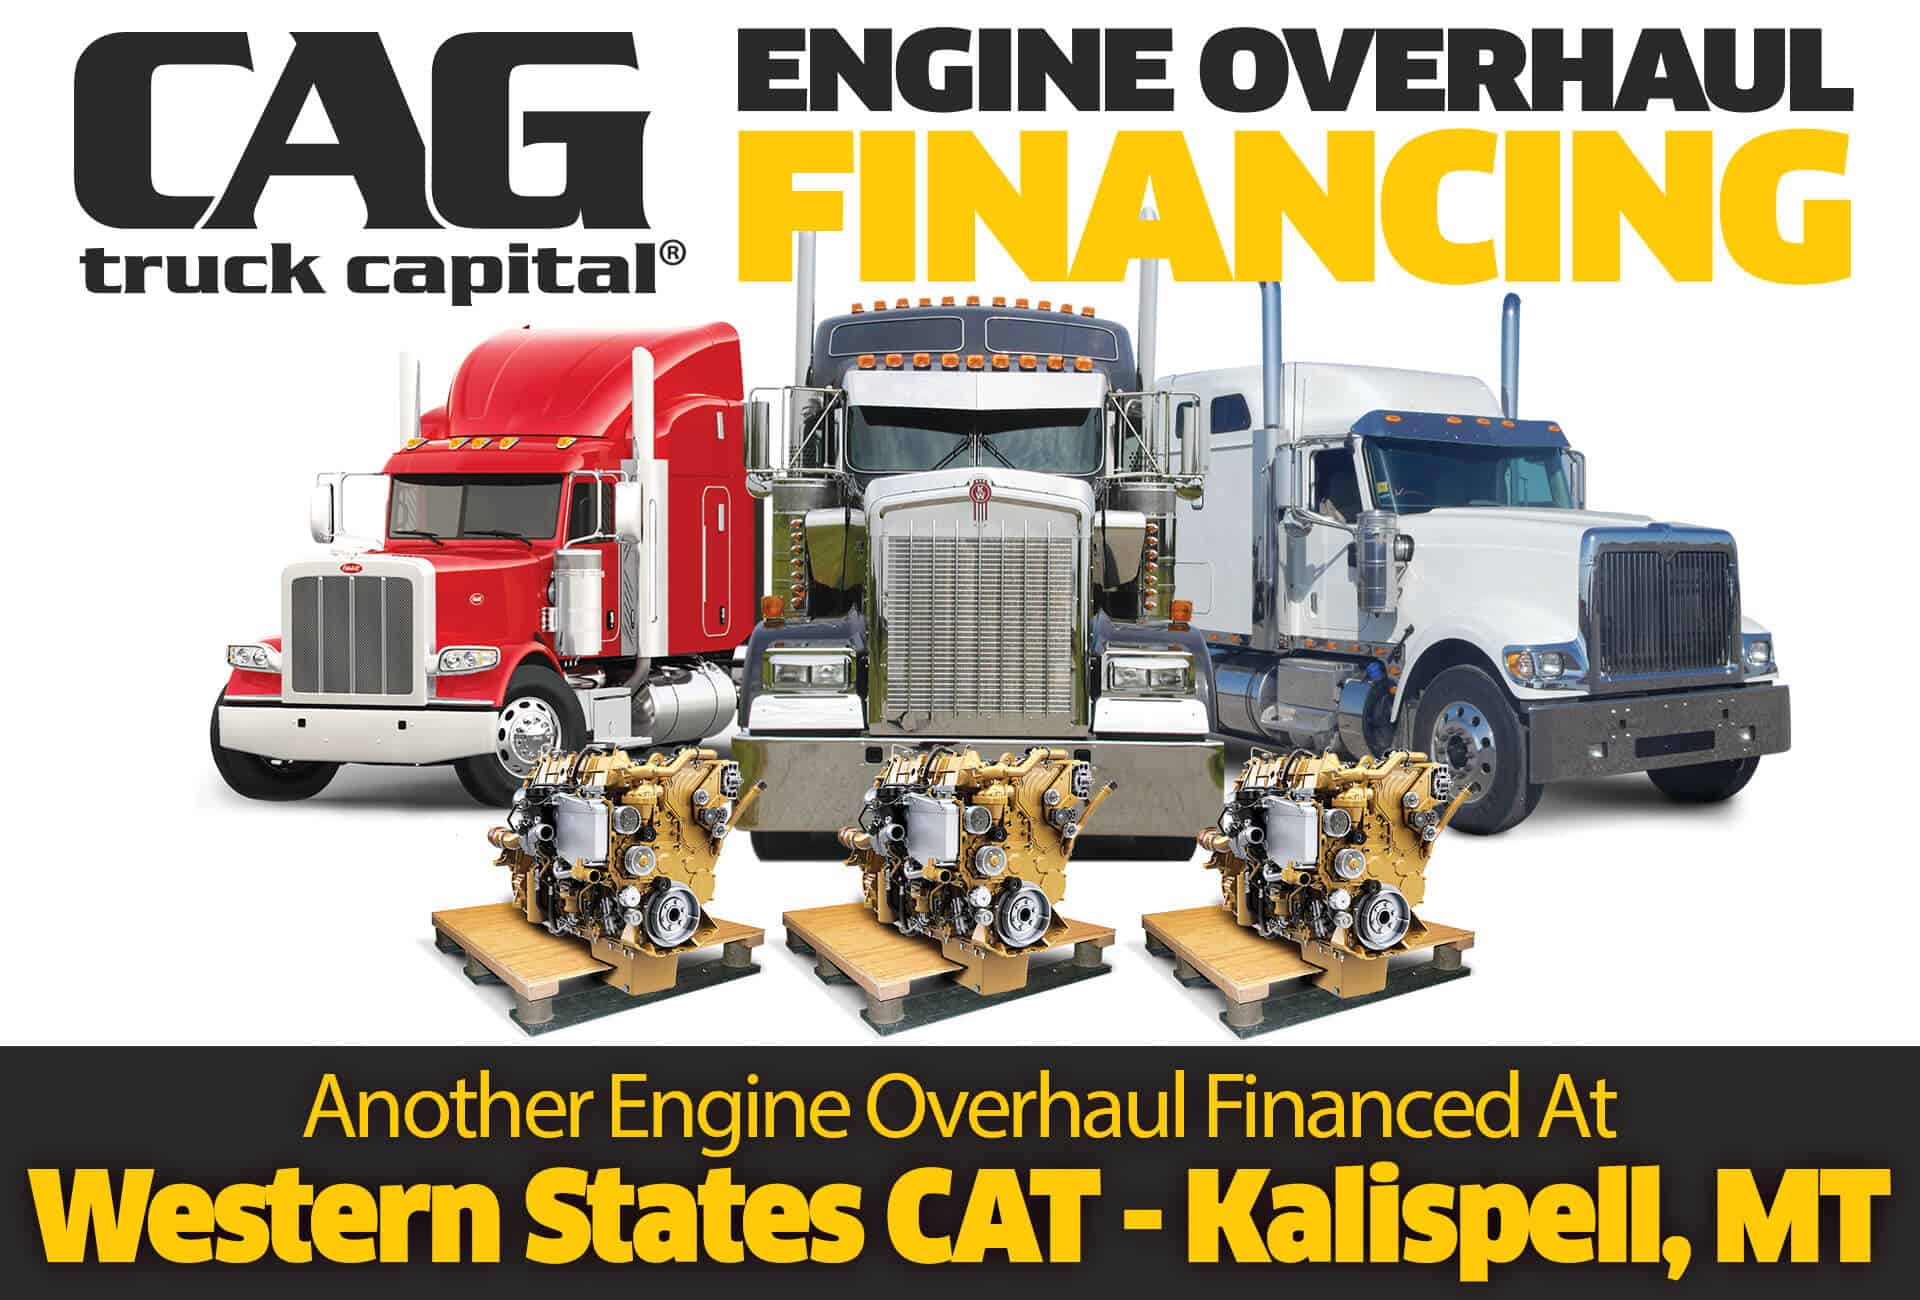 CAG Finances Engine Overhauls In Kalispell, MT